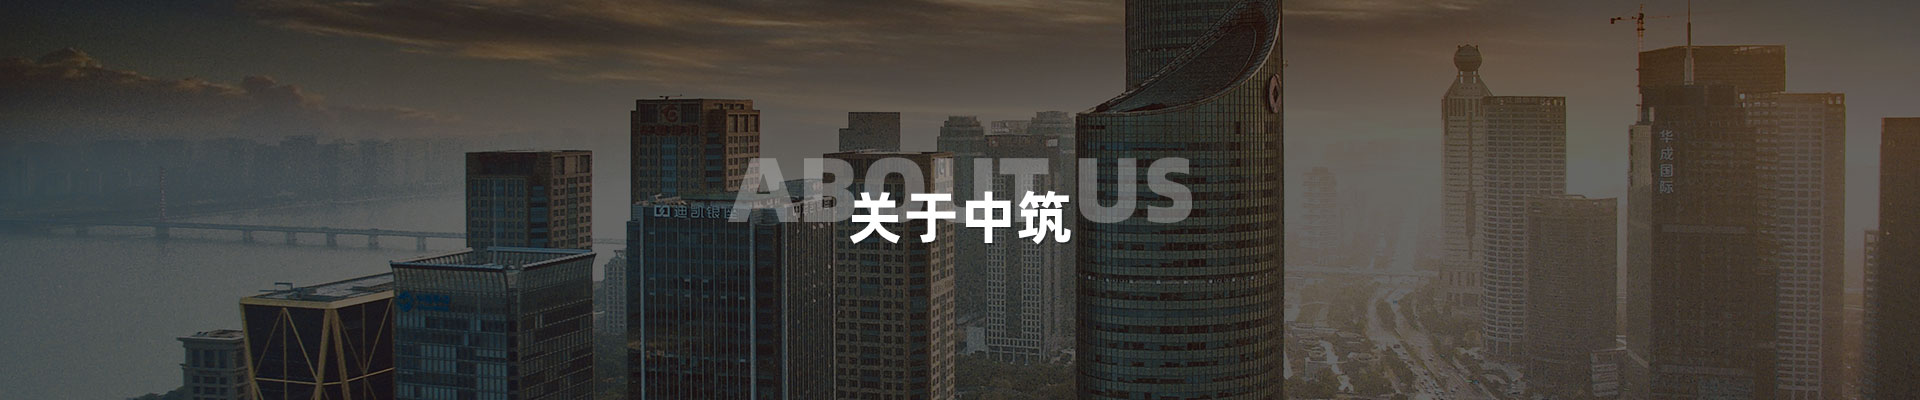 企業文化-深圳市中筑景觀亮化照明科技有限公司